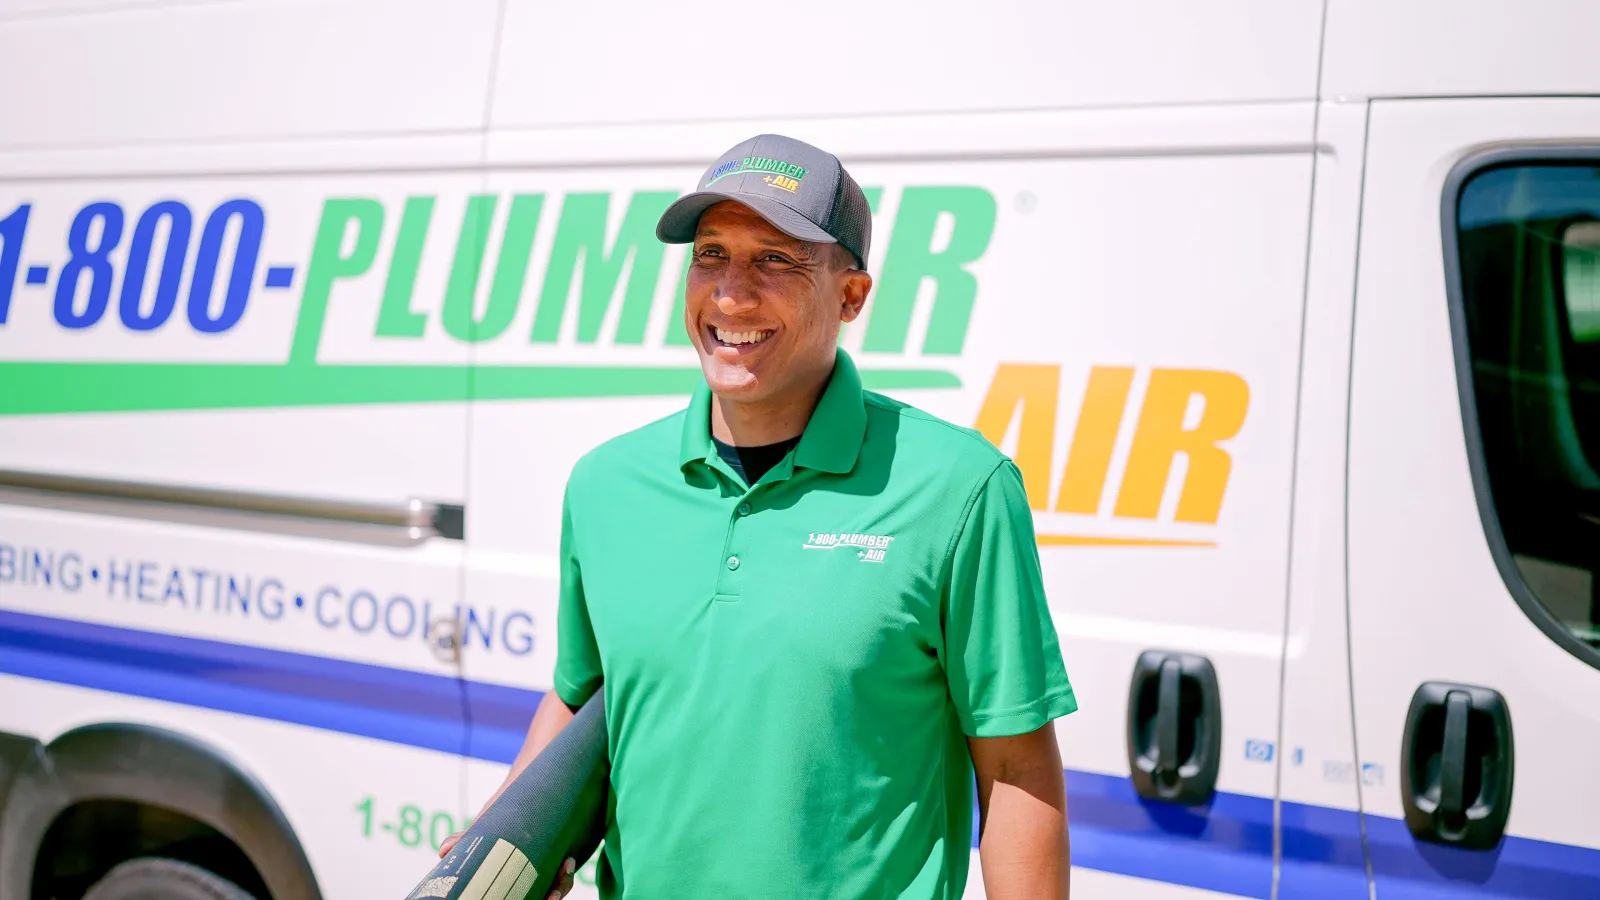 A 1-800-Plumber +Air of Raleigh plumbing technician